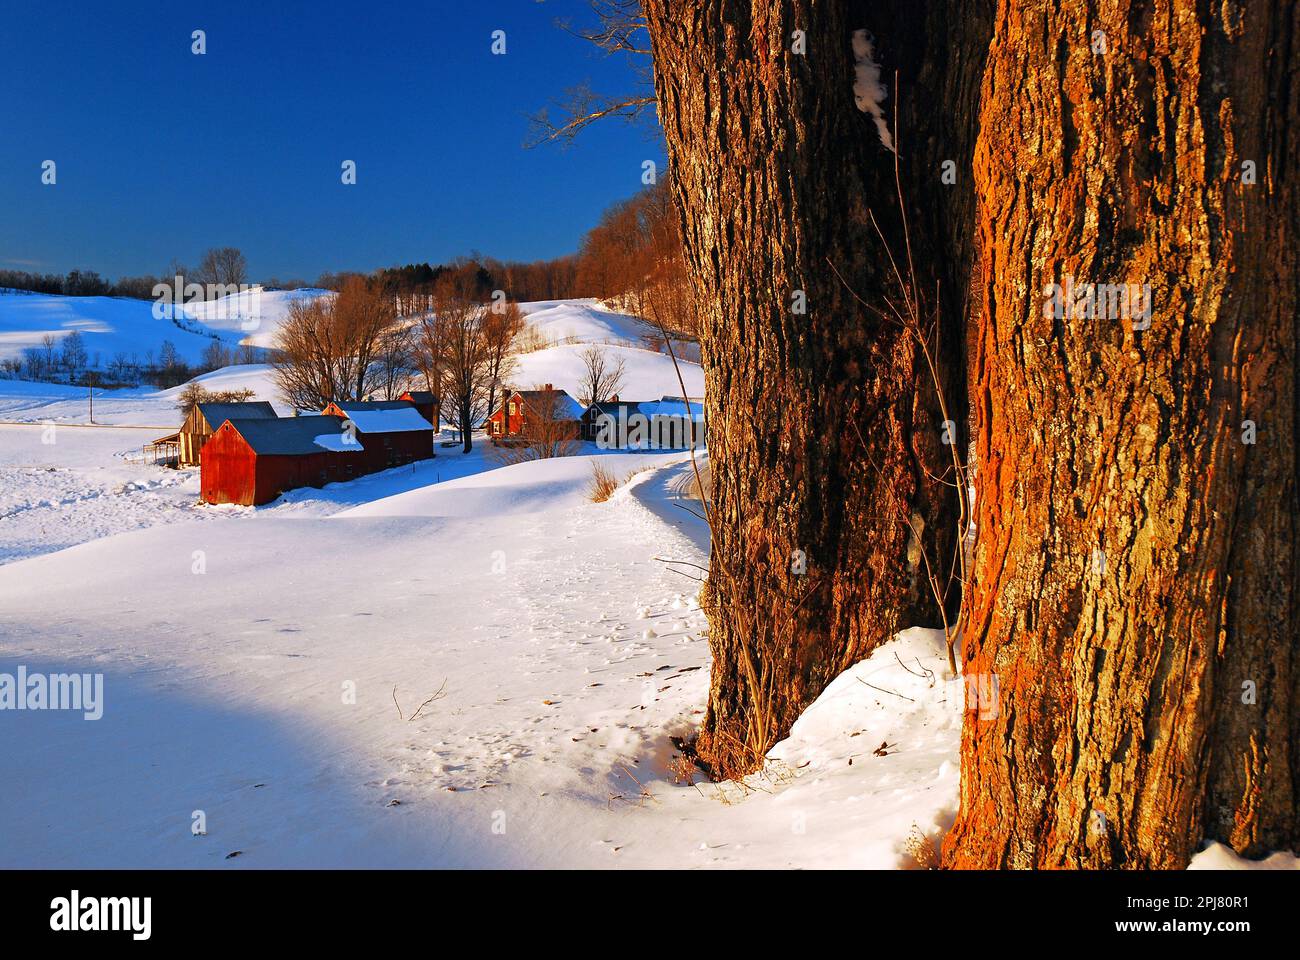 La neve copre una scena rurale del New England, con campi aperti e granai rossi in una fattoria in inverno Foto Stock